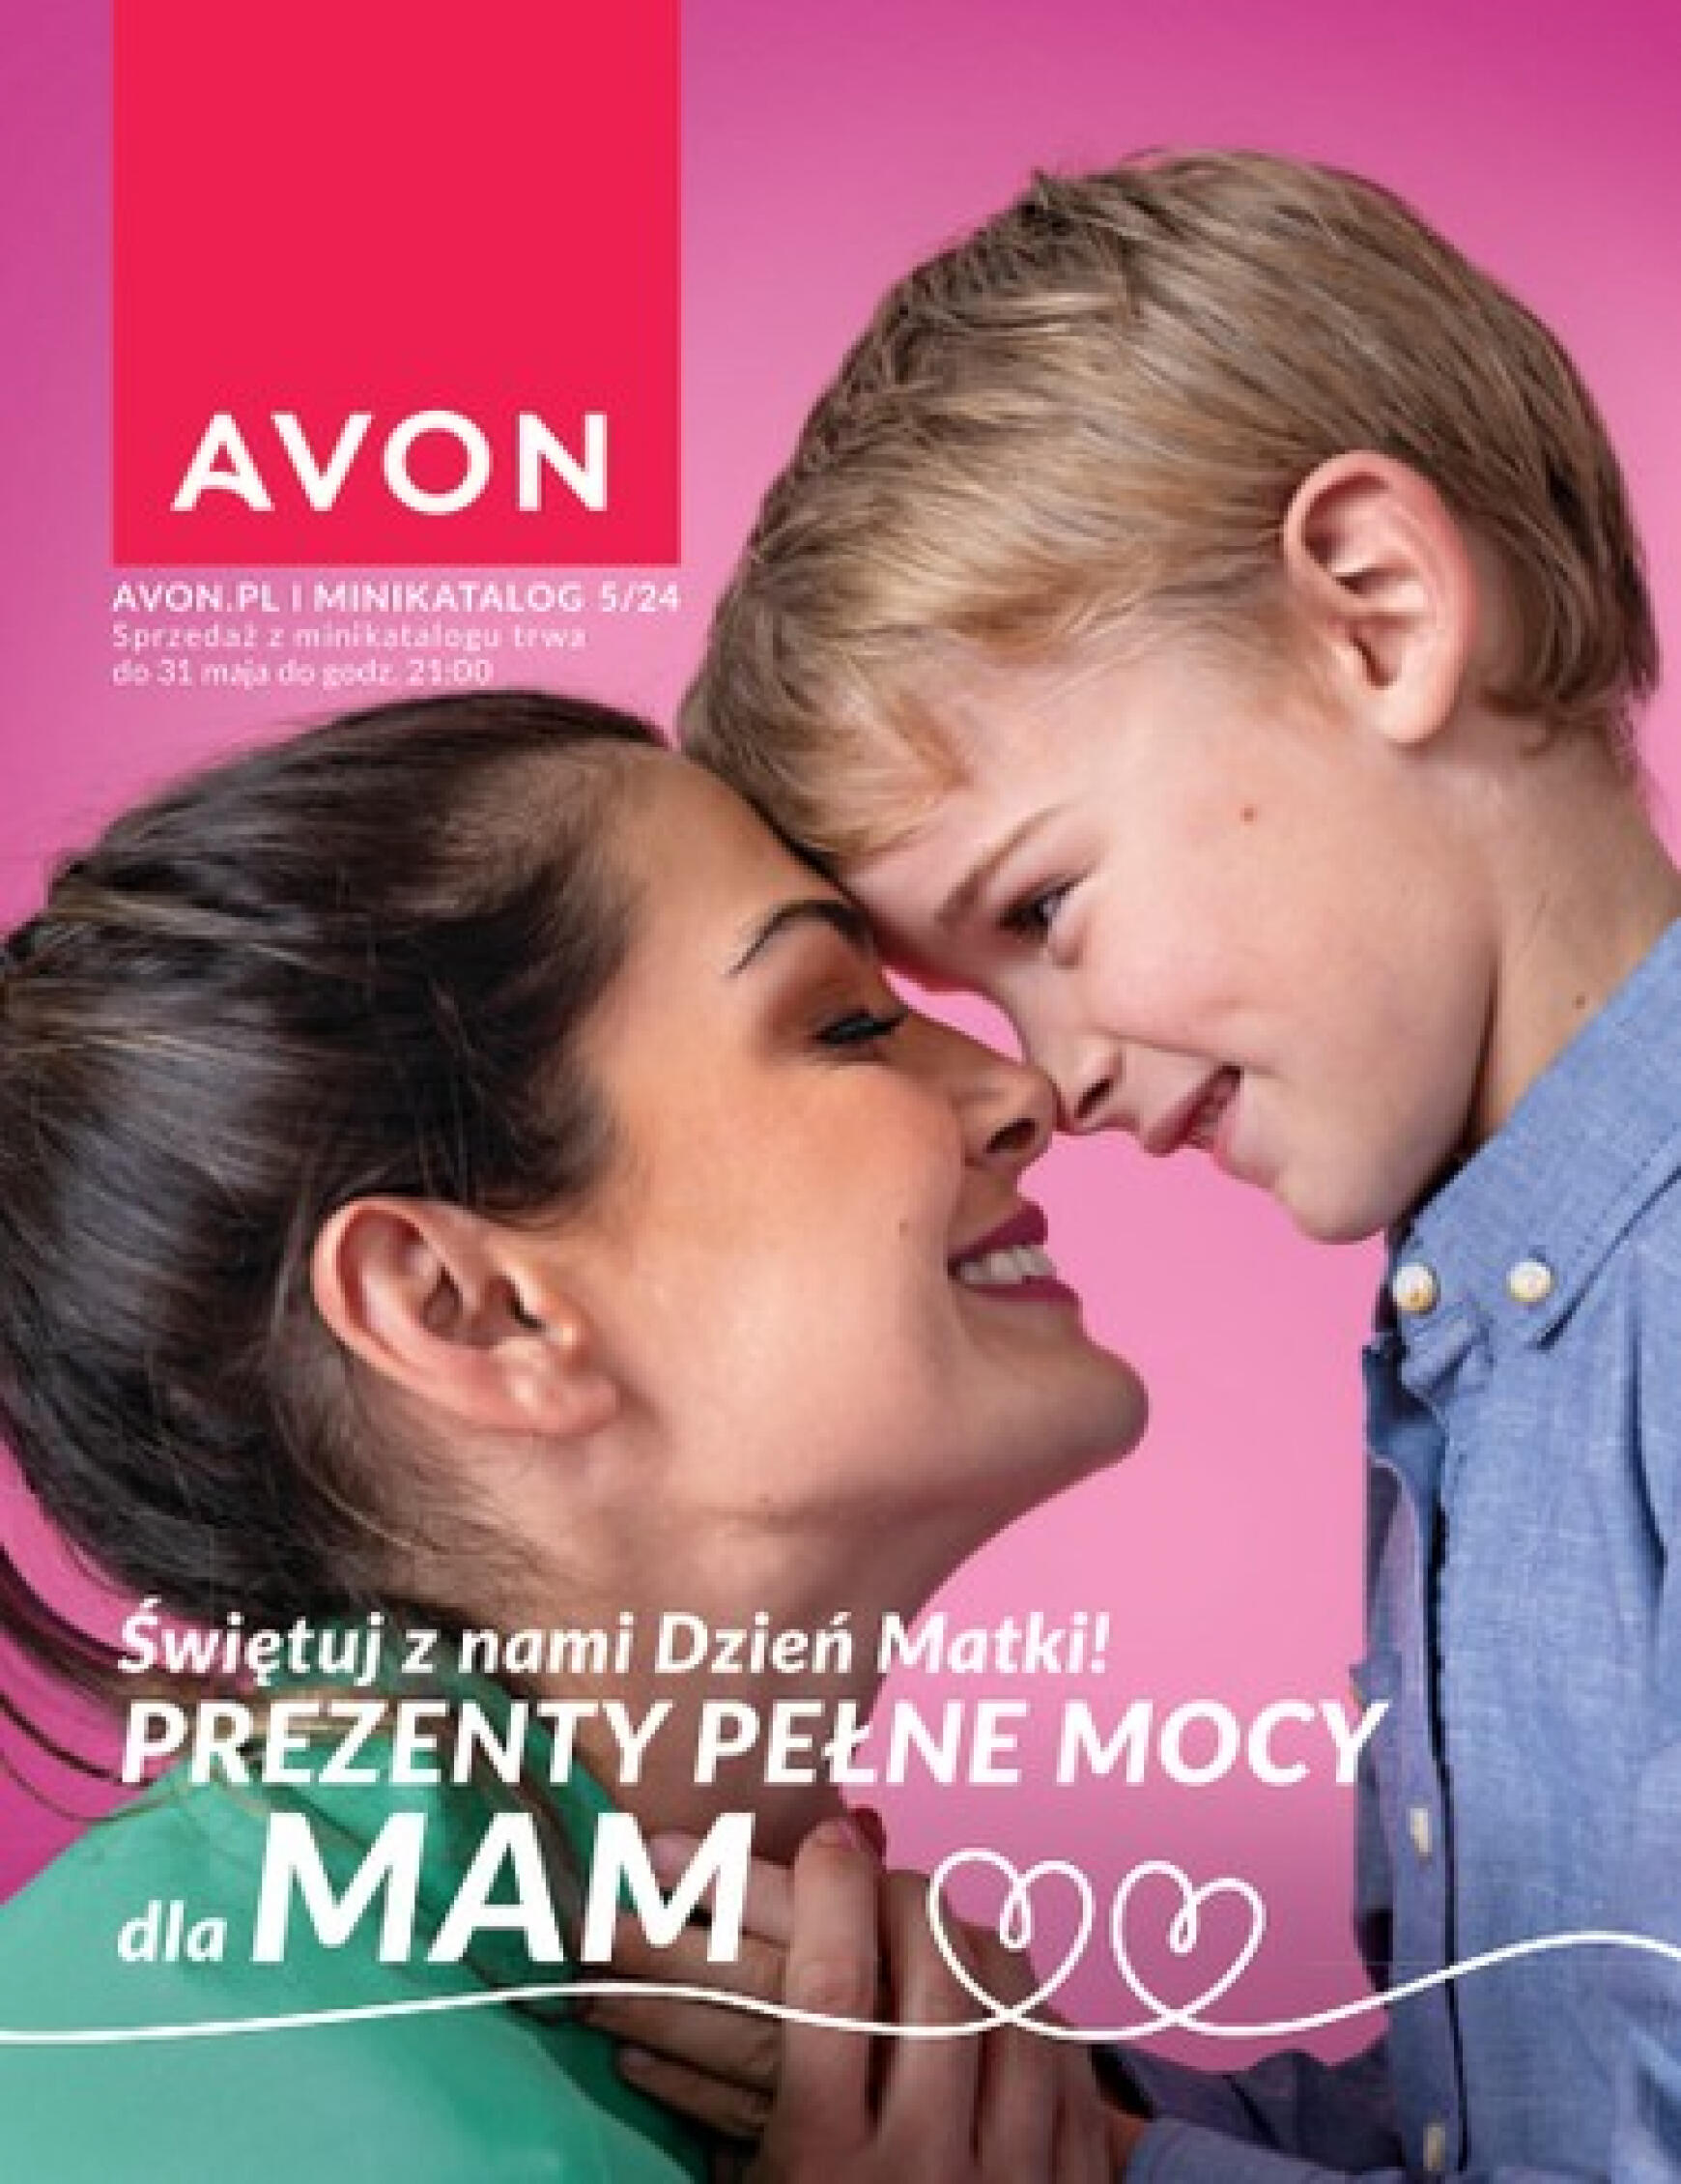 avon - Avon - Prezenty na Dzień Matki gazetka aktualna ważna od 01.05. - 31.05. - page: 1